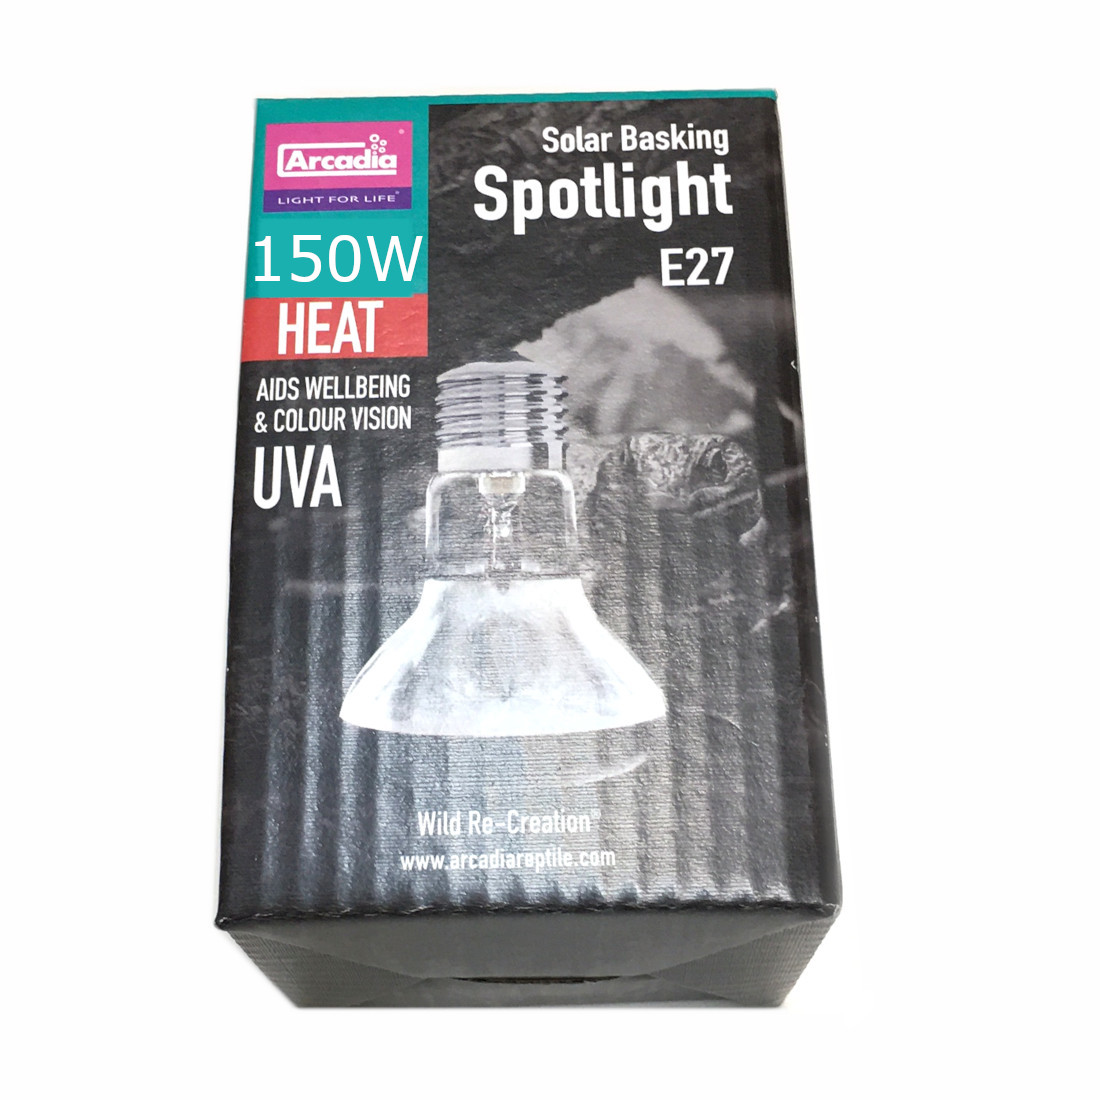 Arcadia Solar Basking Spotlight E27 150W Packung